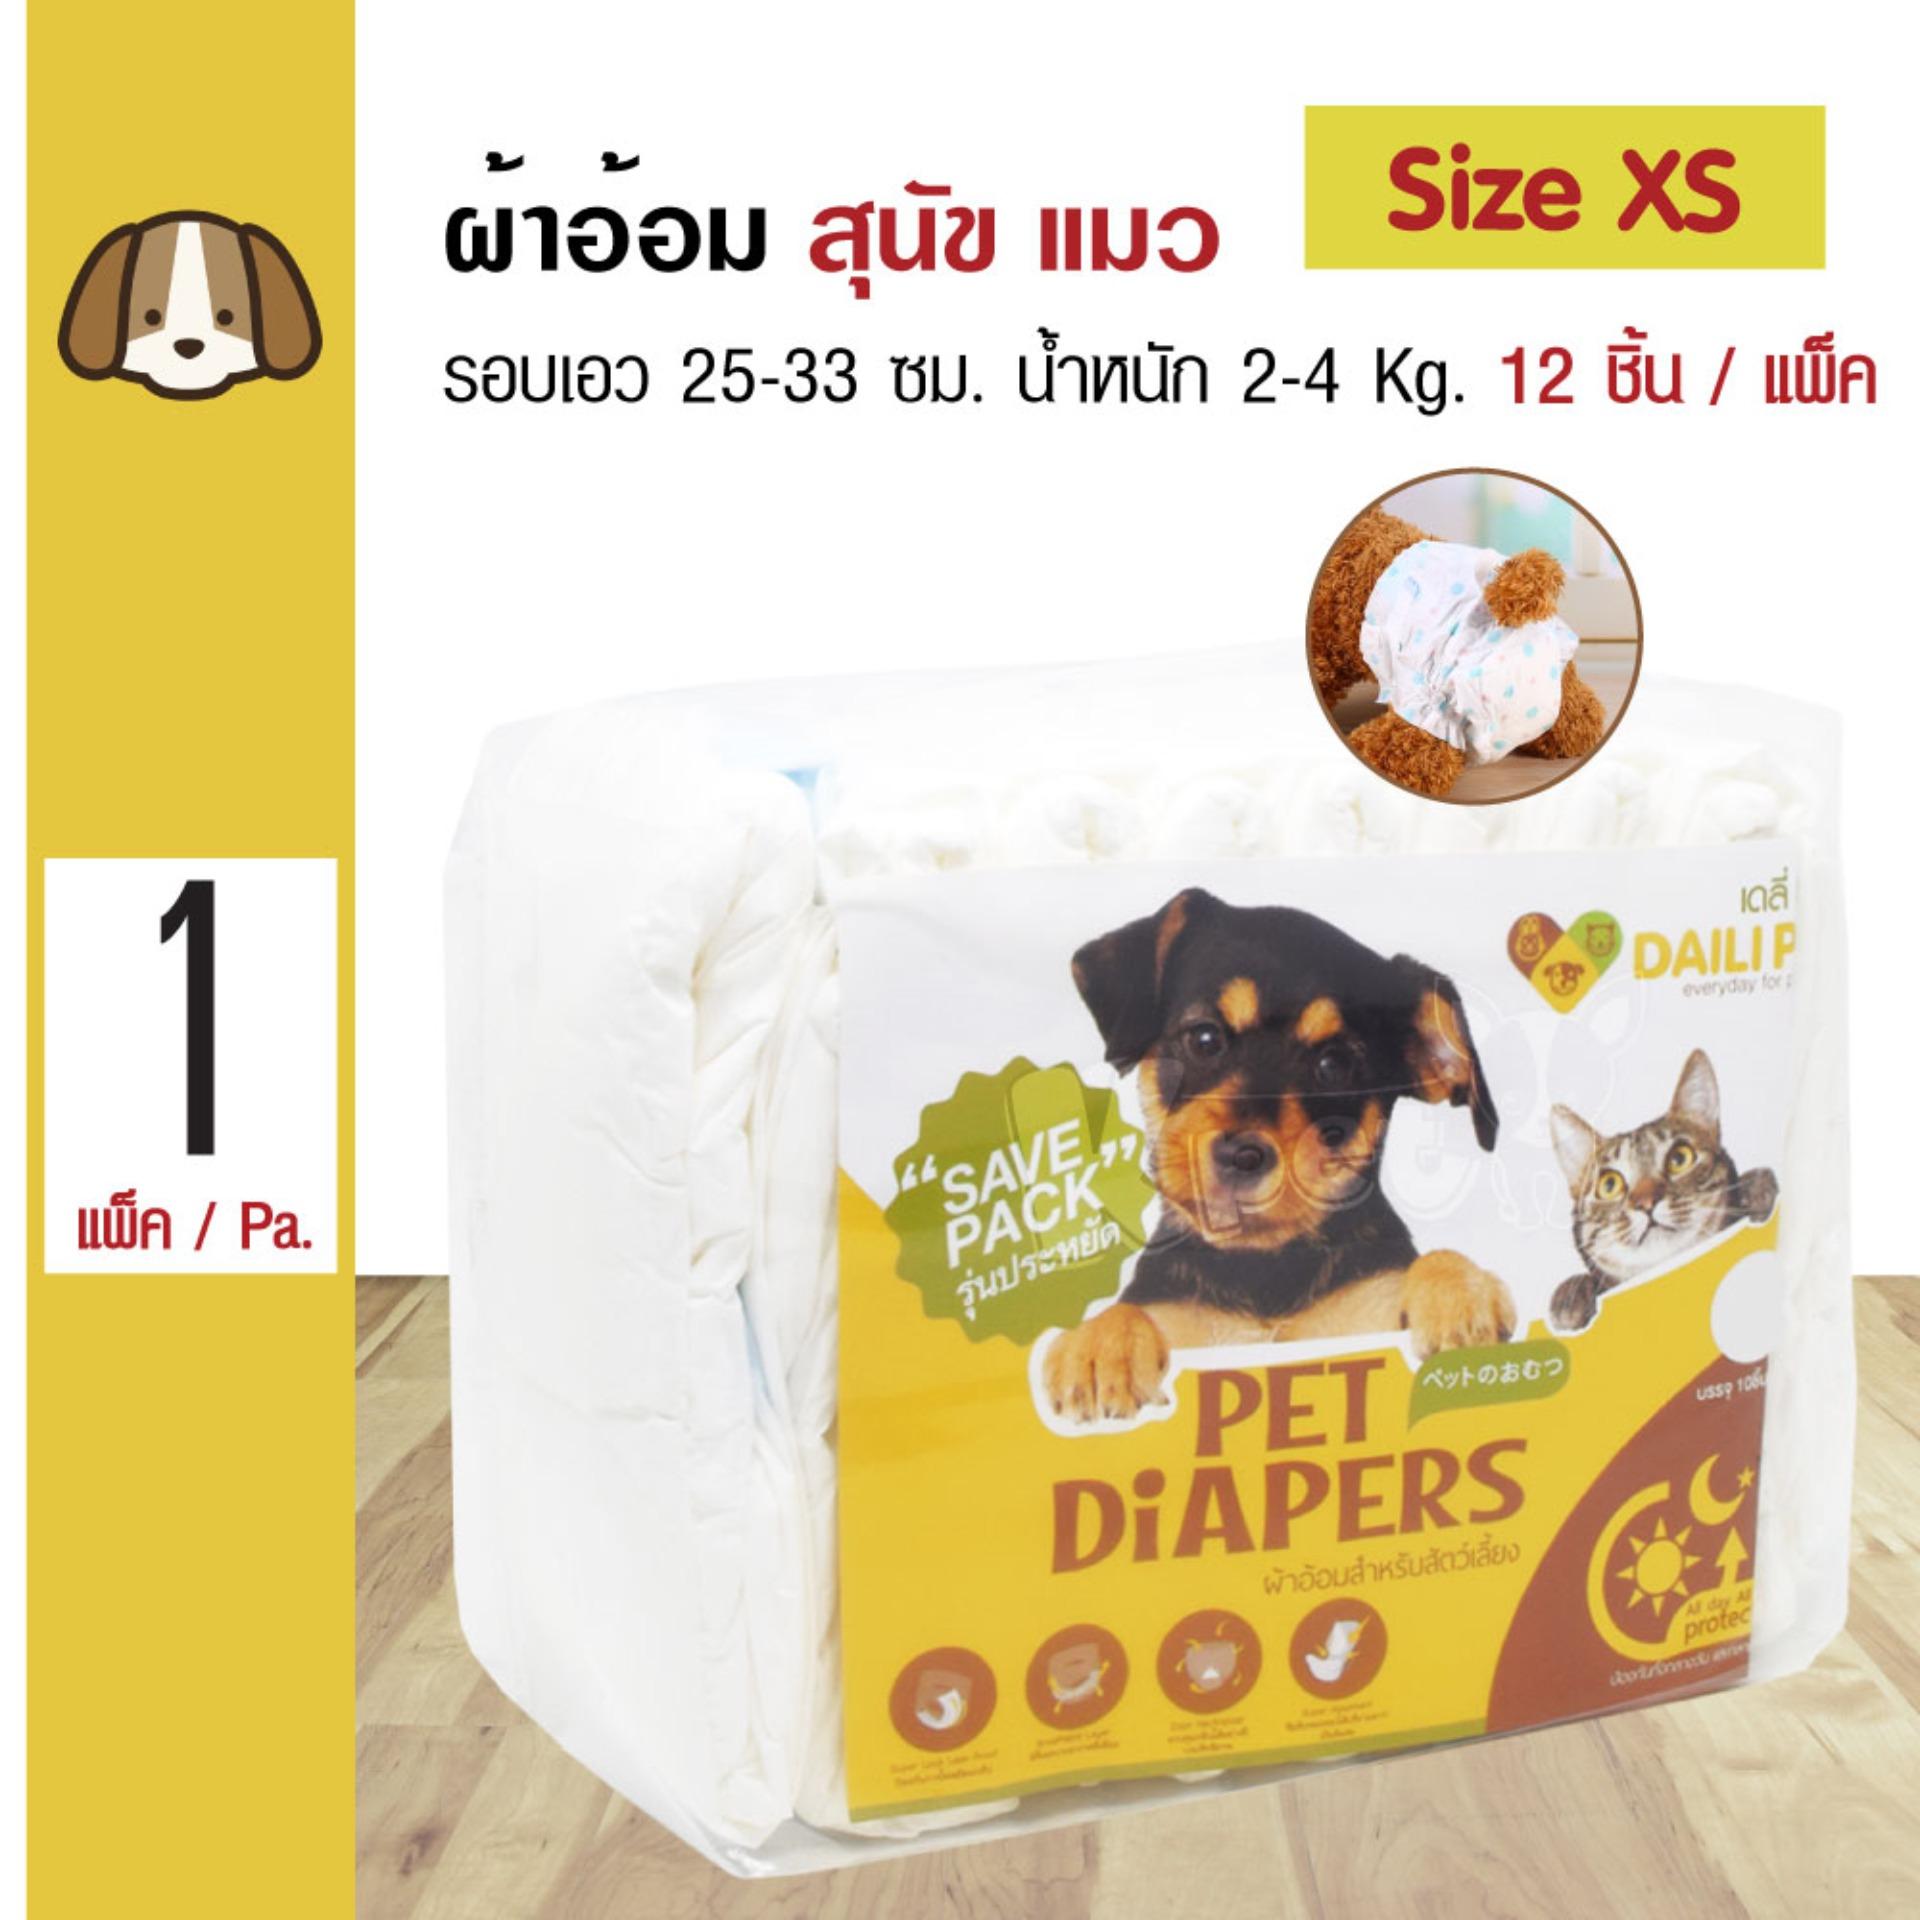 Daili Pet Diapers ผ้าอ้อมสุนัข ฝึกขับถ่าย Size XS สำหรับสุนัขน้ำหนัก 2-4 kg. รอบเอว 25-33 ซม. จำนวน (12 ชิ้น/แพ็ค)